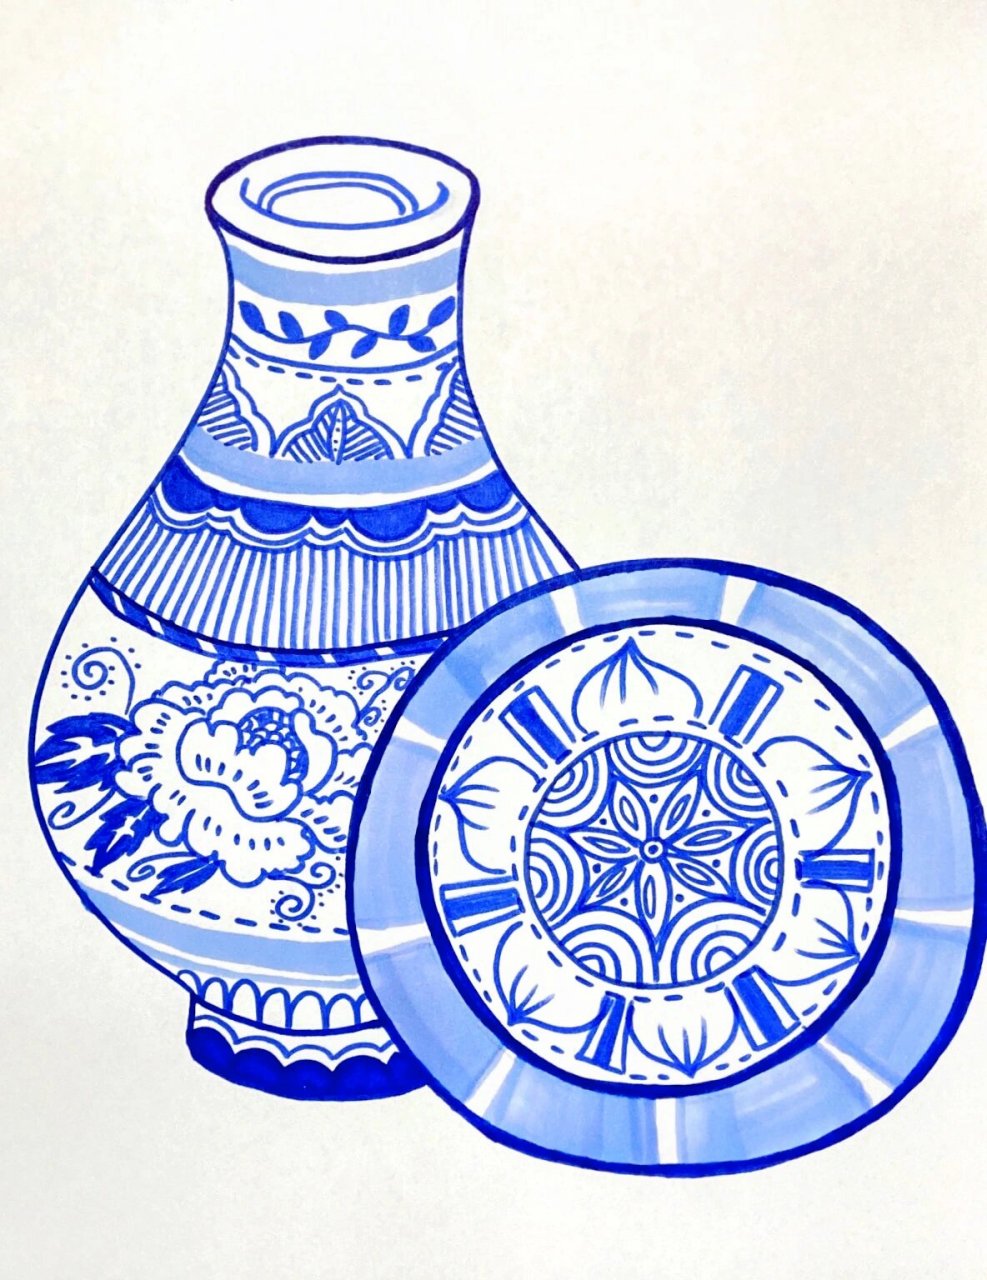 【175】儿童创意美术《青花瓷》 青花瓷,常简称青花,是中国瓷器的主流